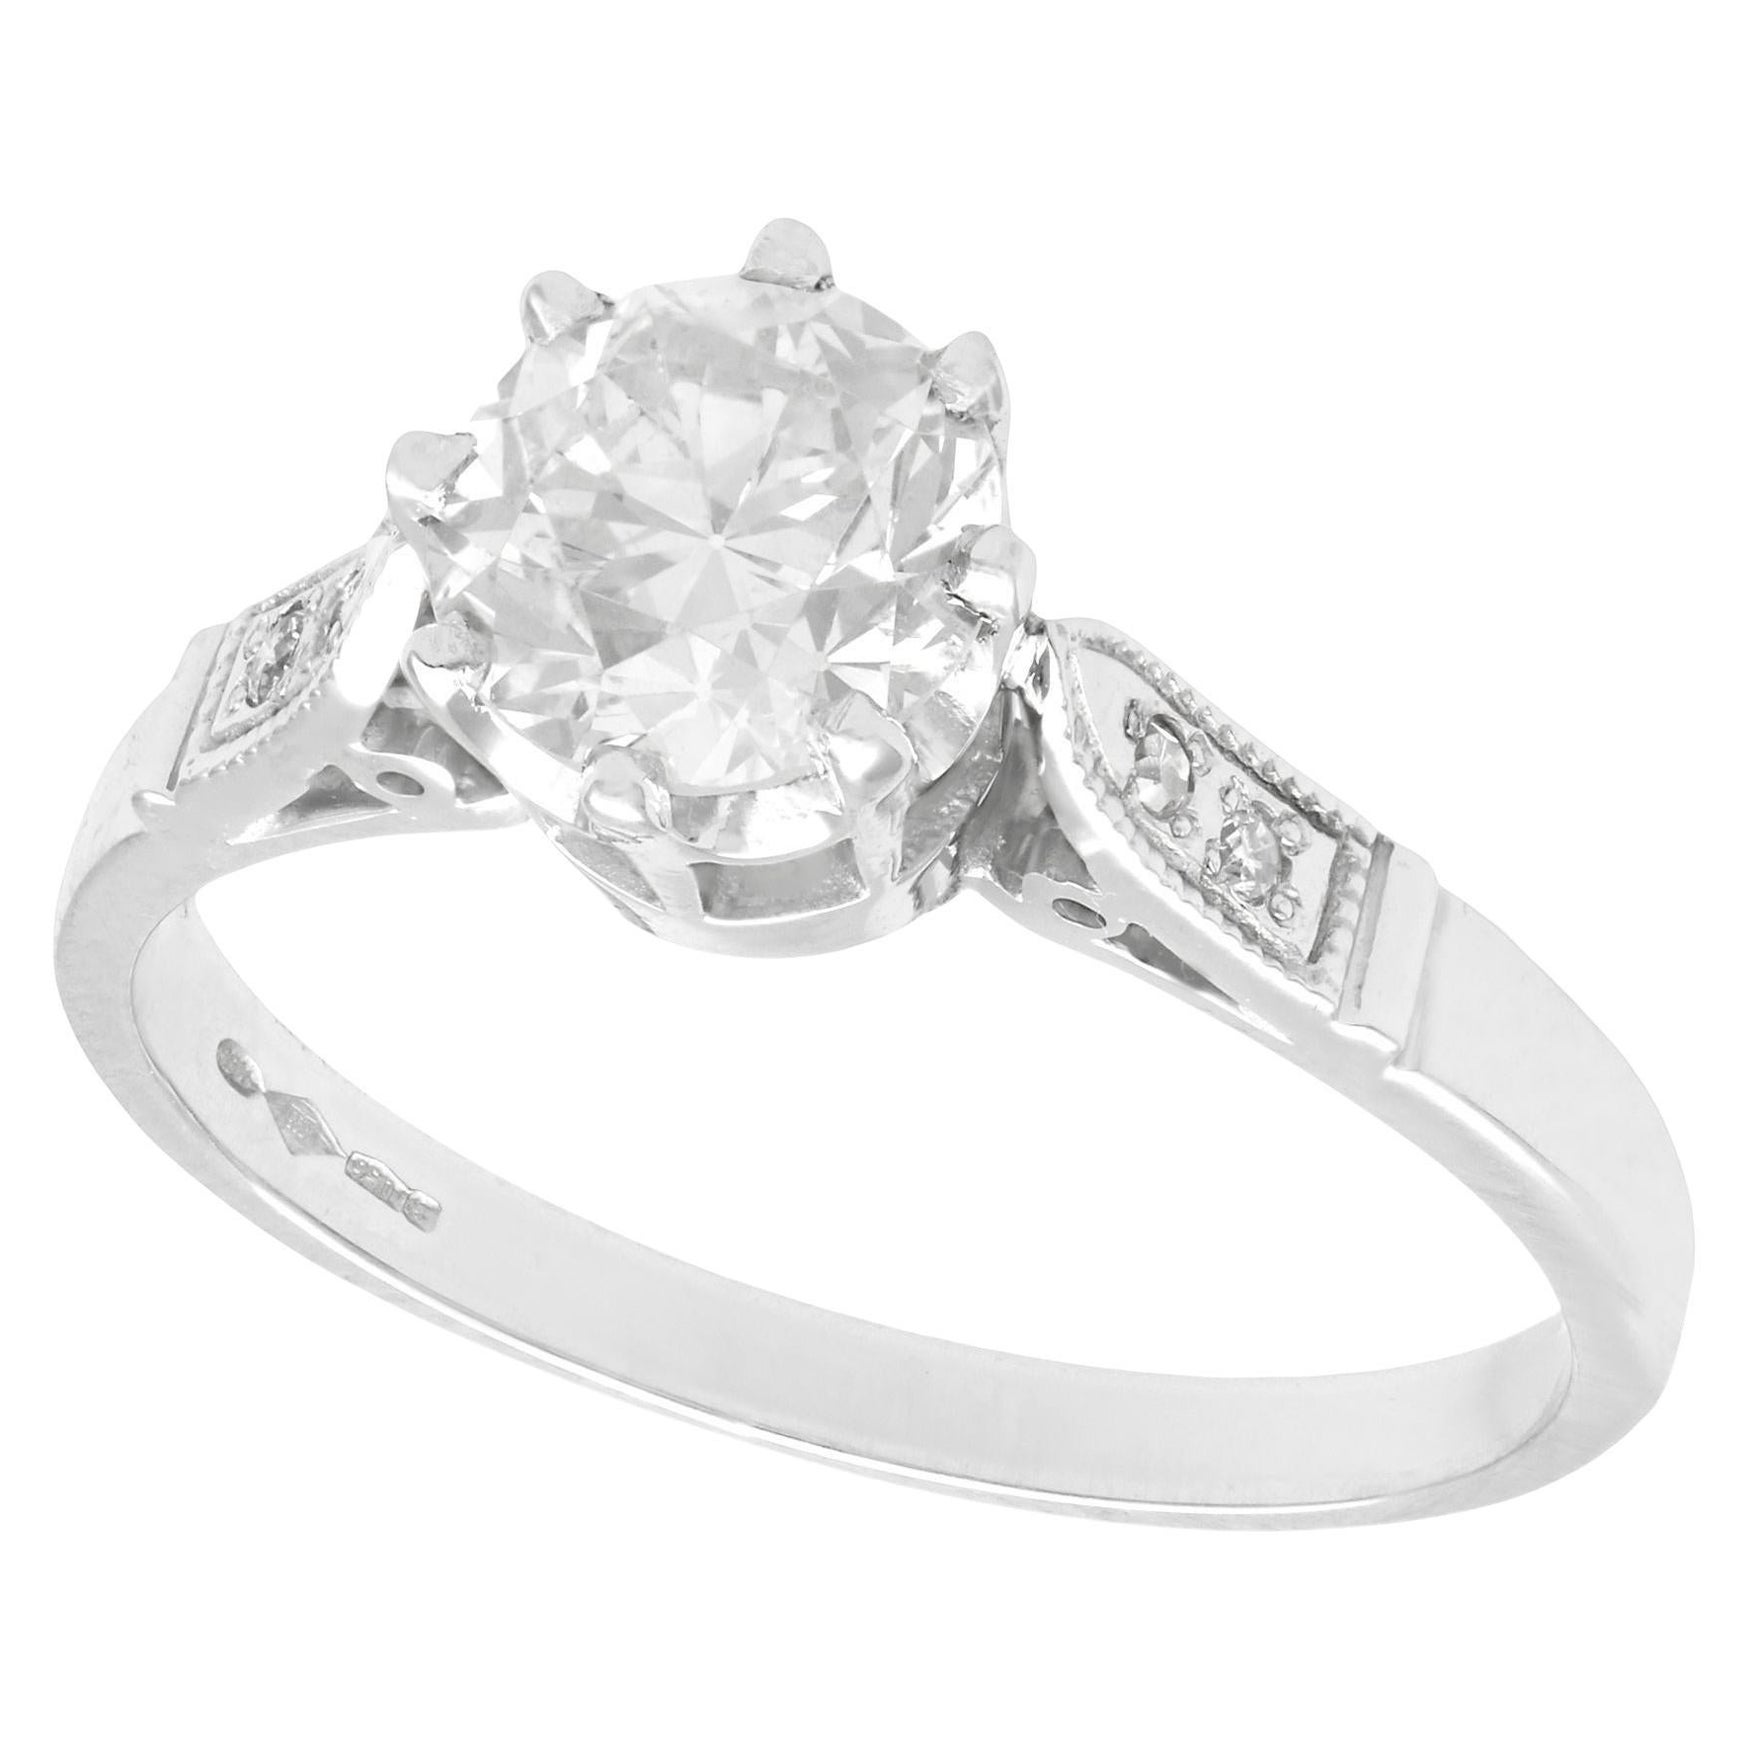 1.25 Carat Diamond and Platinum Solitaire Engagement Ring